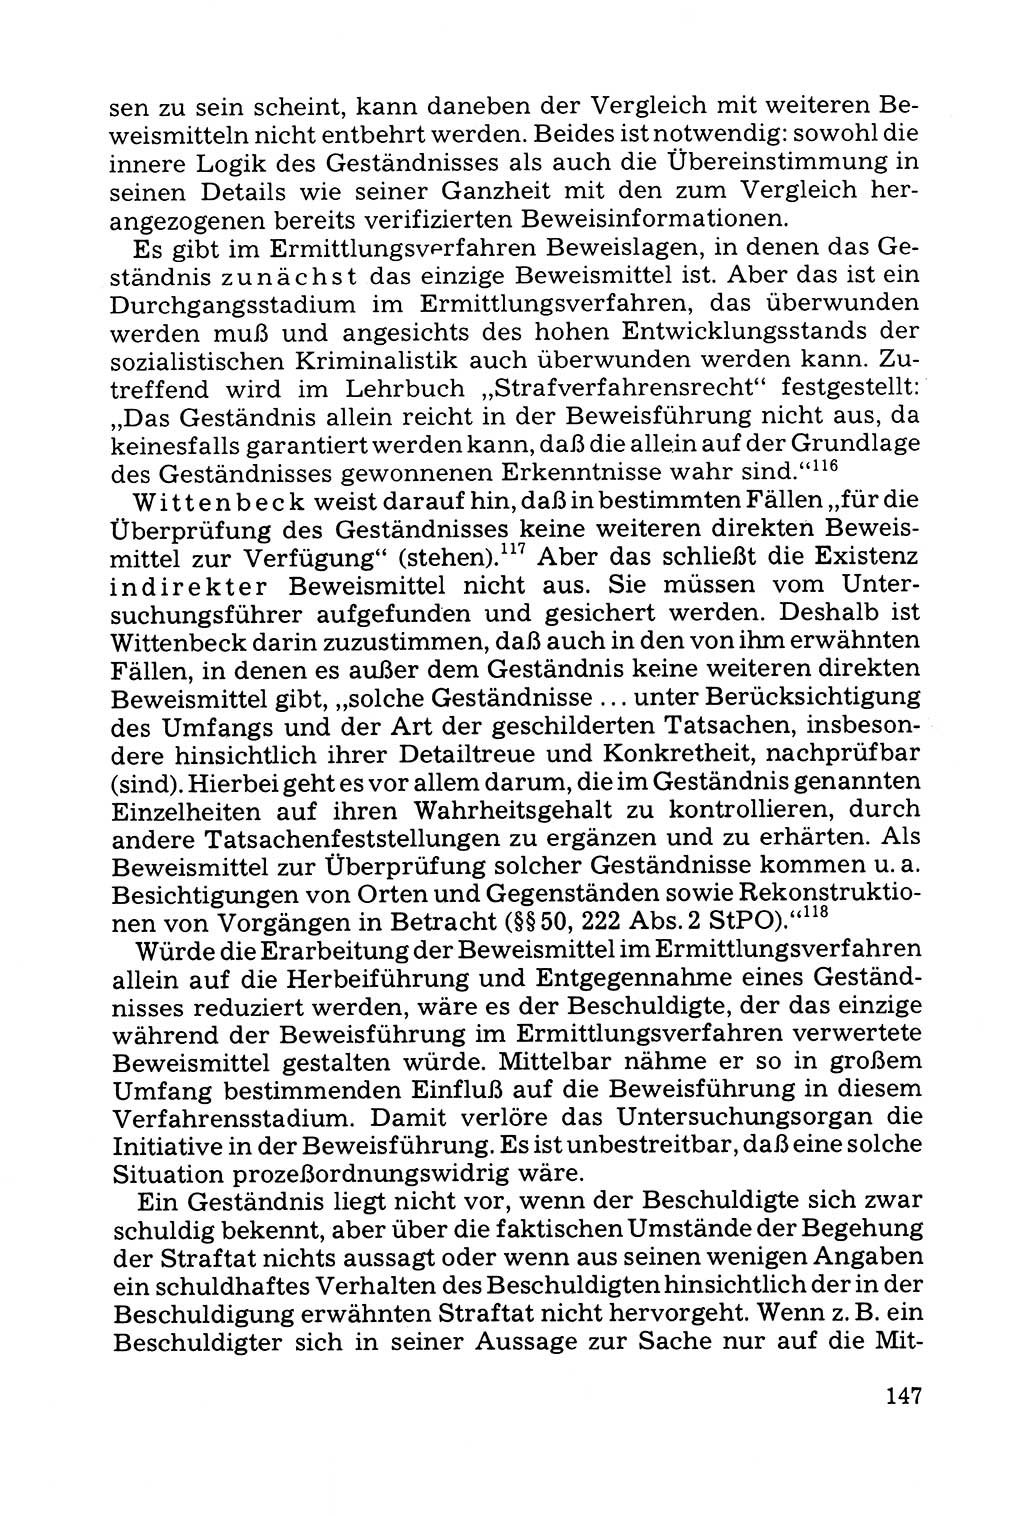 Grundfragen der Beweisführung im Ermittlungsverfahren [Deutsche Demokratische Republik (DDR)] 1980, Seite 147 (Bws.-Fhrg. EV DDR 1980, S. 147)